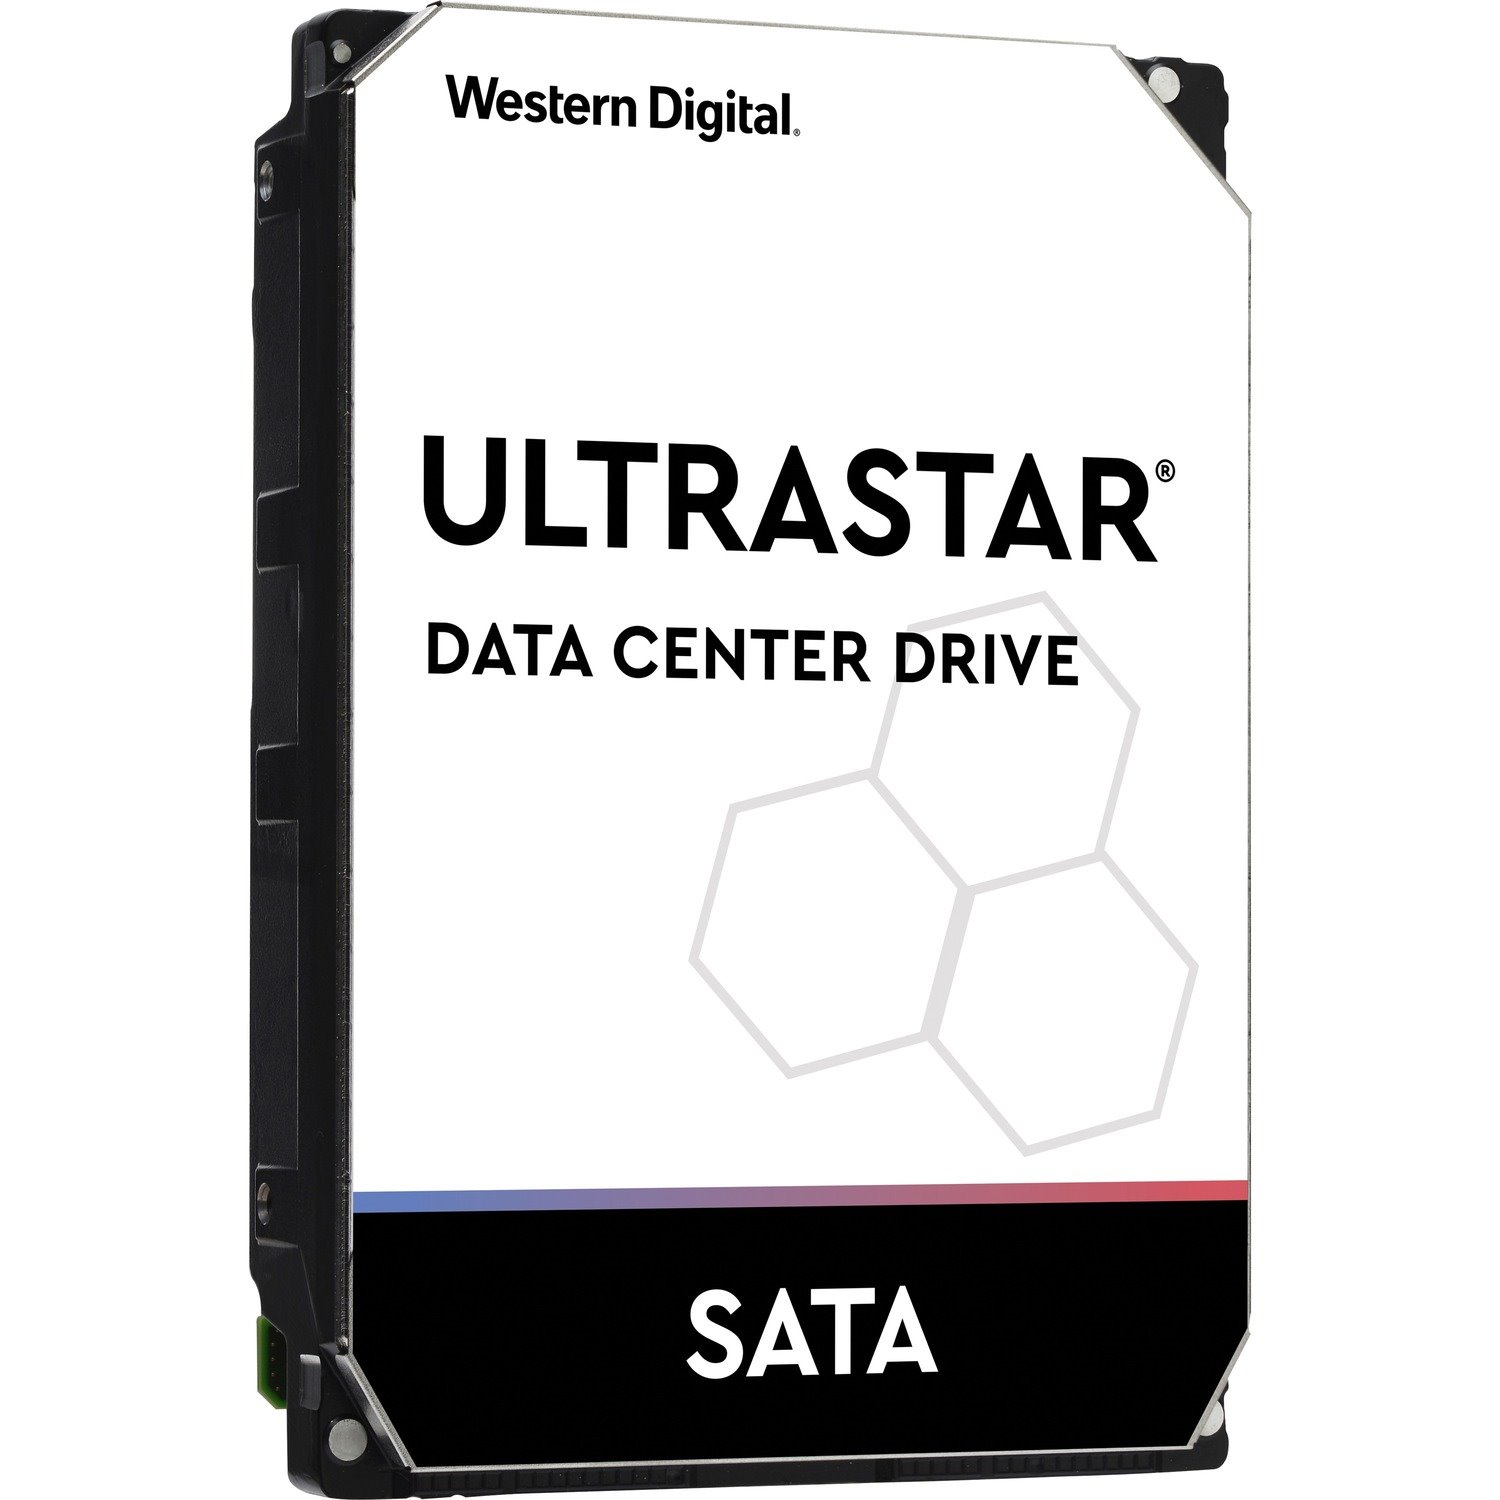 HGST Ultrastar DC HC310 HUS726T6TALE6L4 6 TB Hard Drive - 3.5" Internal - SATA (SATA/600)